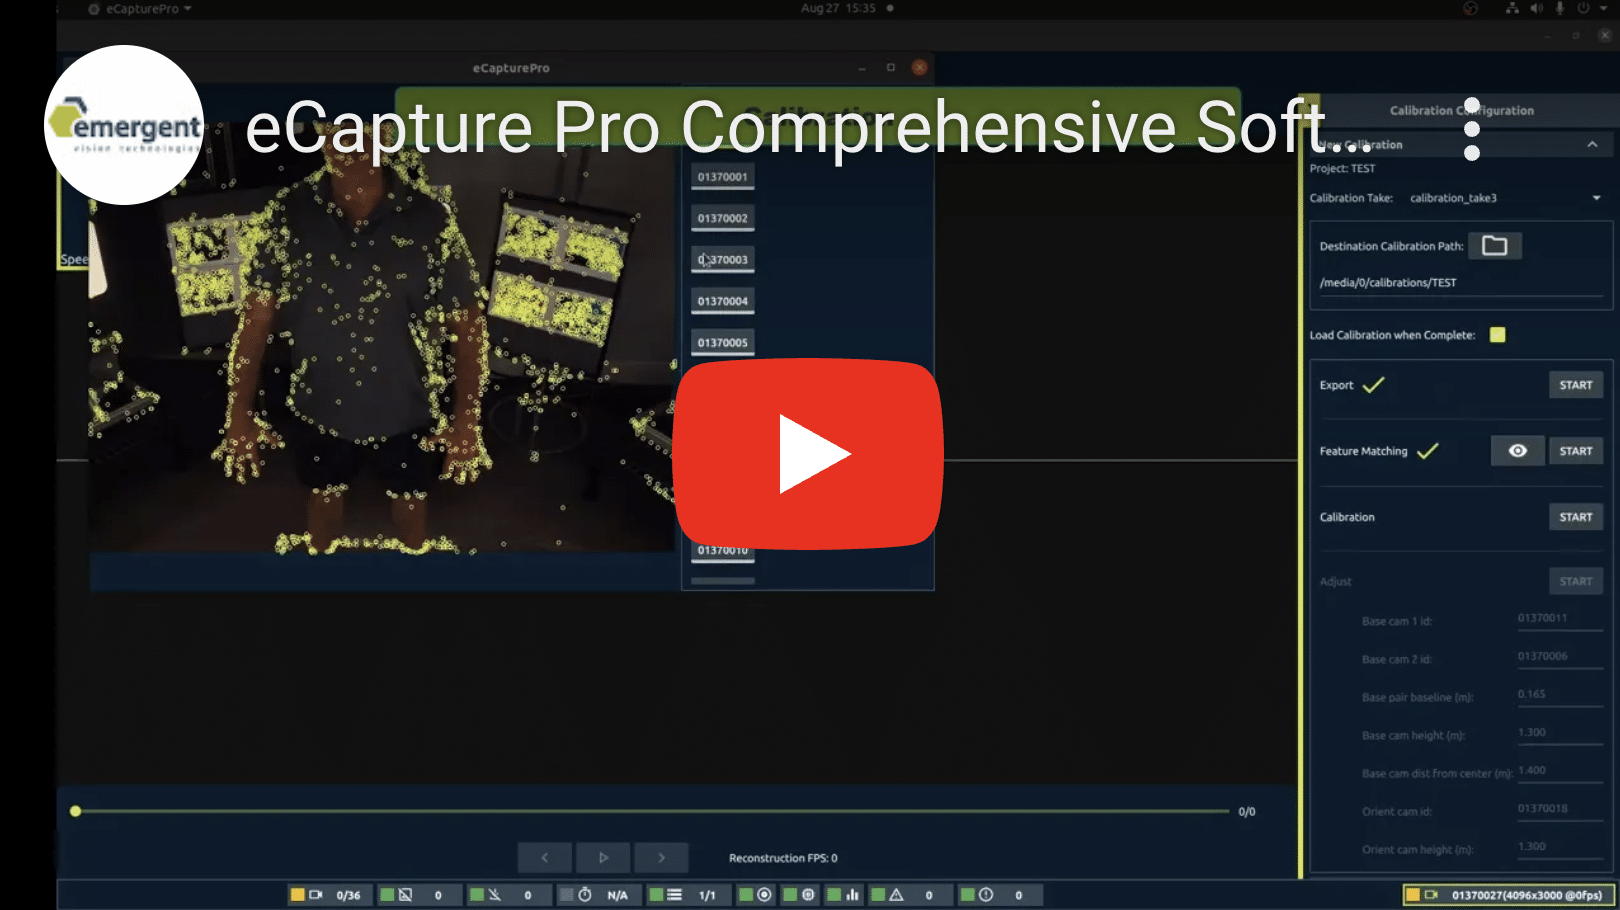 eCapture Pro Comprehensive Software Demonstration